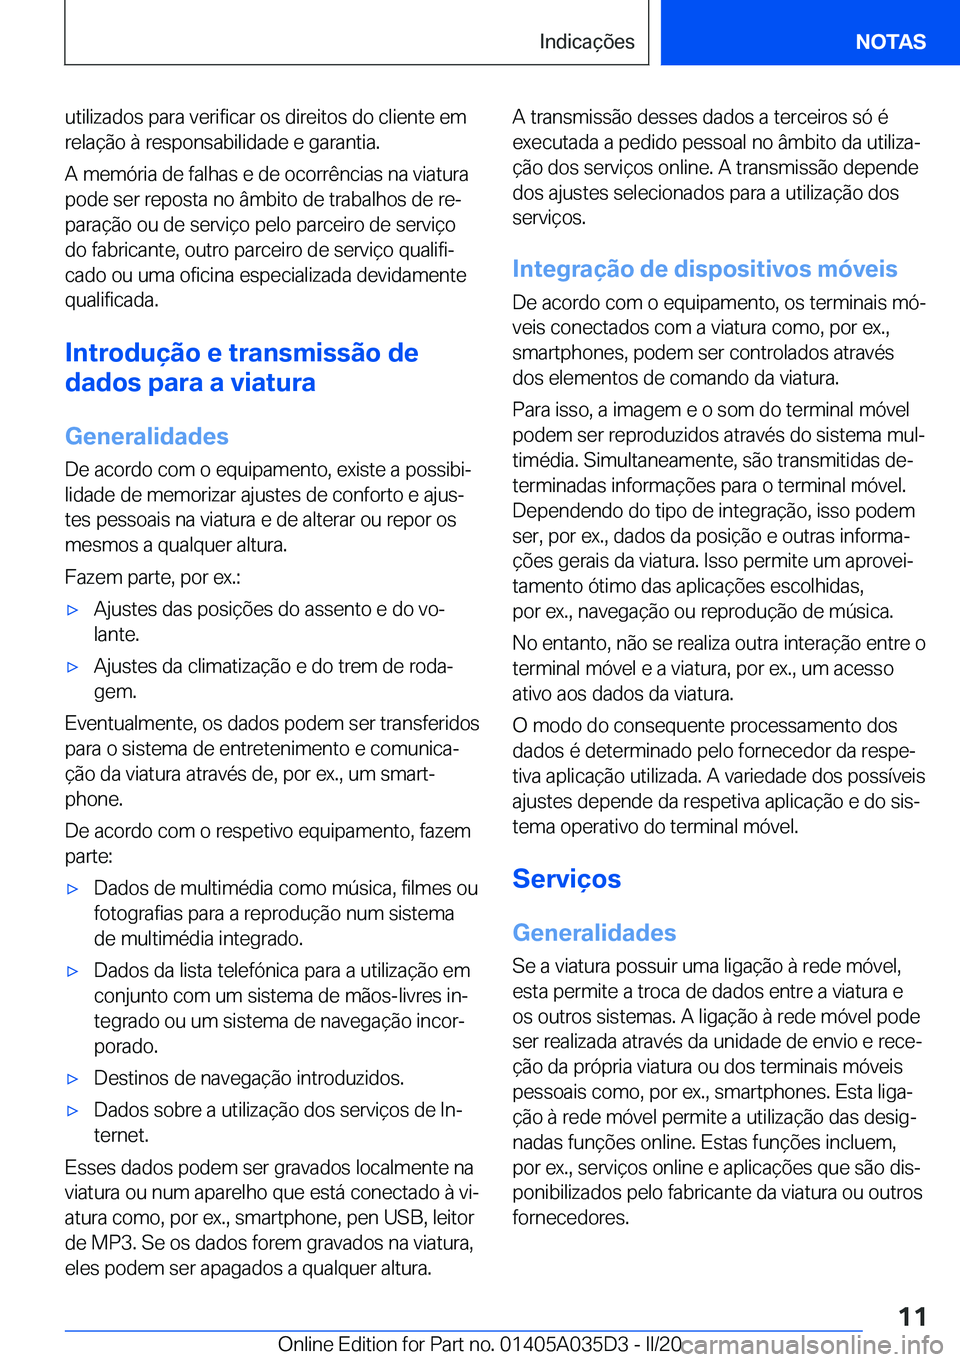 BMW X4 2020  Manual do condutor (in Portuguese) �u�t�i�l�i�z�a�d�o�s��p�a�r�a��v�e�r�i�f�i�c�a�r��o�s��d�i�r�e�i�t�o�s��d�o��c�l�i�e�n�t�e��e�m�r�e�l�a�